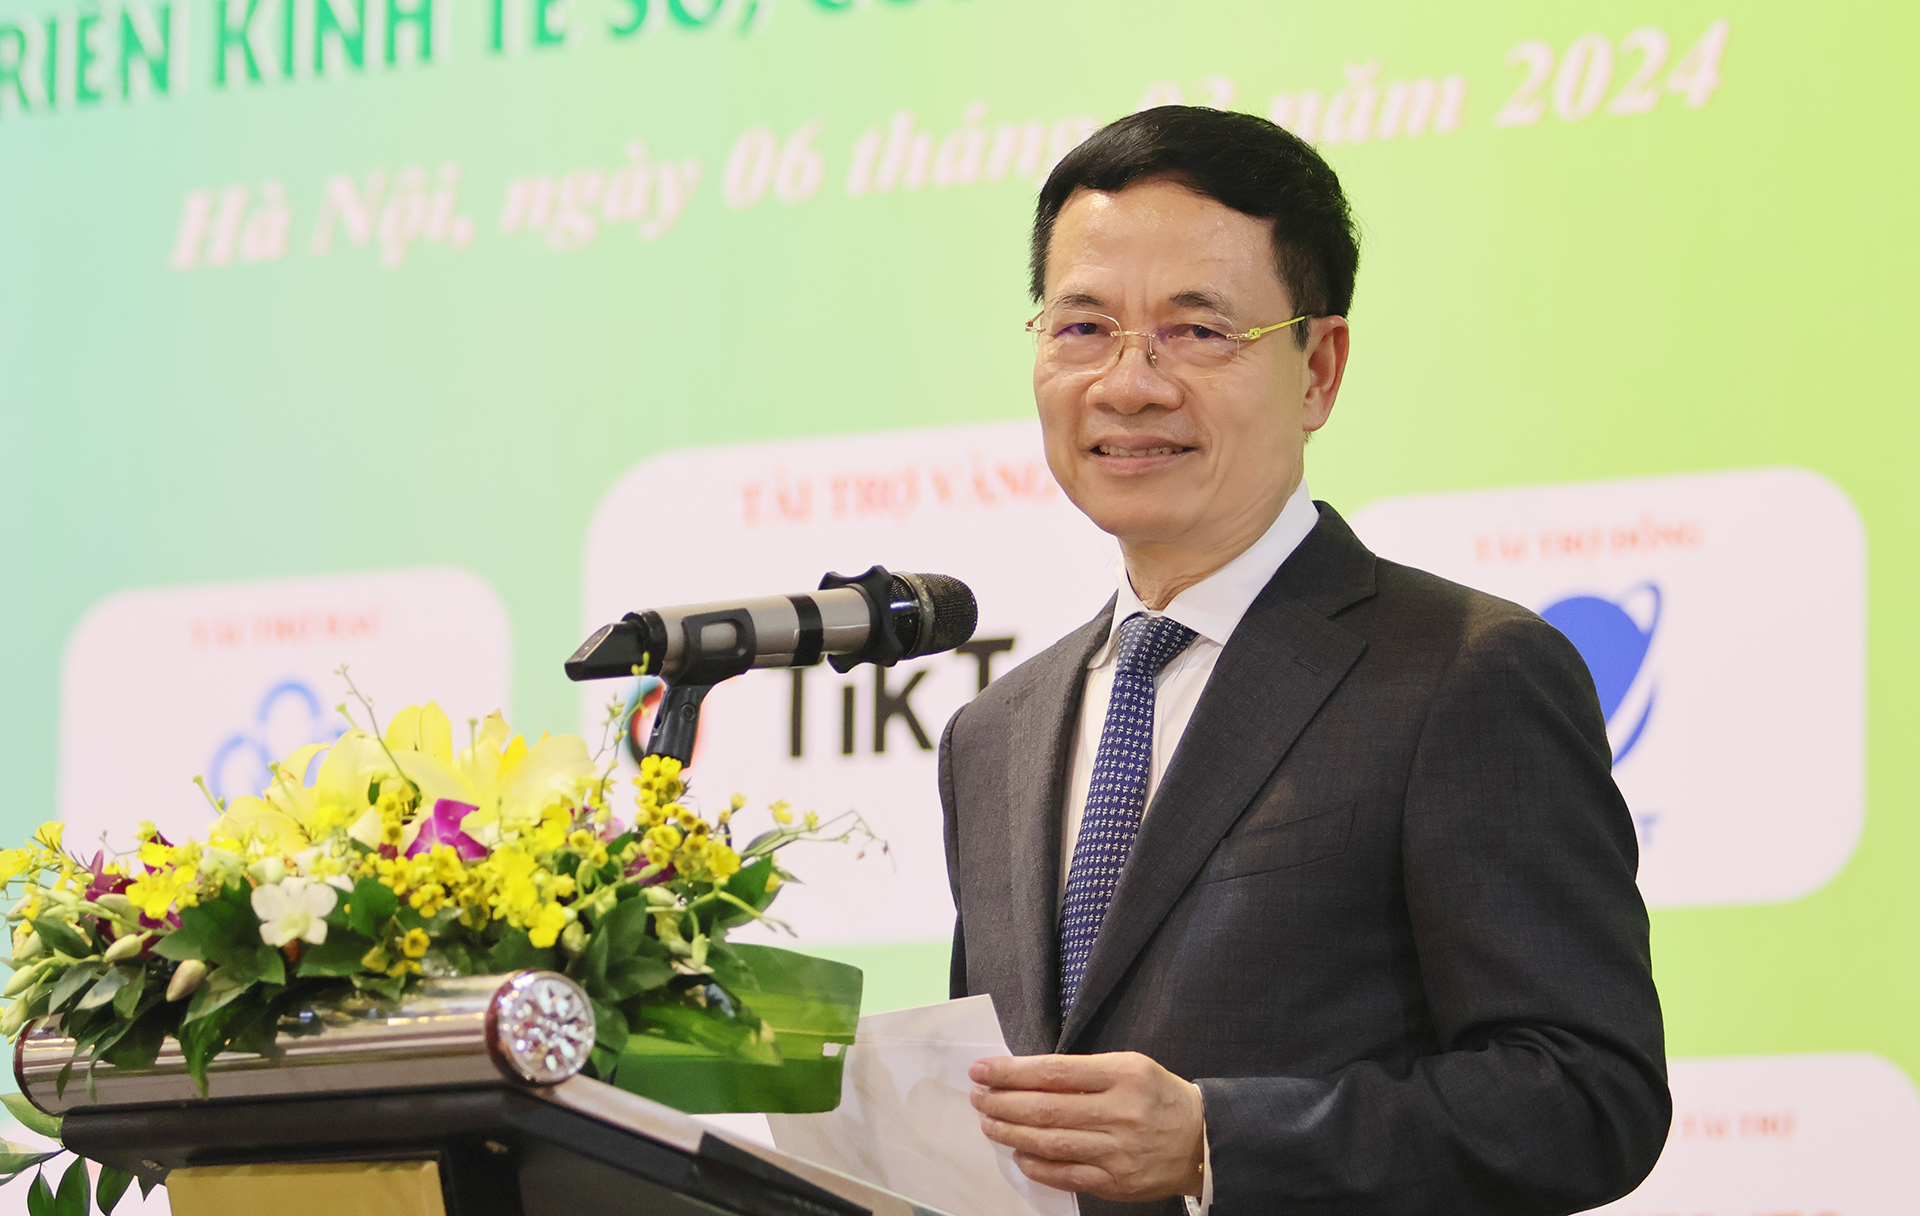 Phát triển công nghiệp bán dẫn là cơ hội để Việt Nam tạo dựng lại ngành công nghiệp điện tử nước nhà- Ảnh 1.